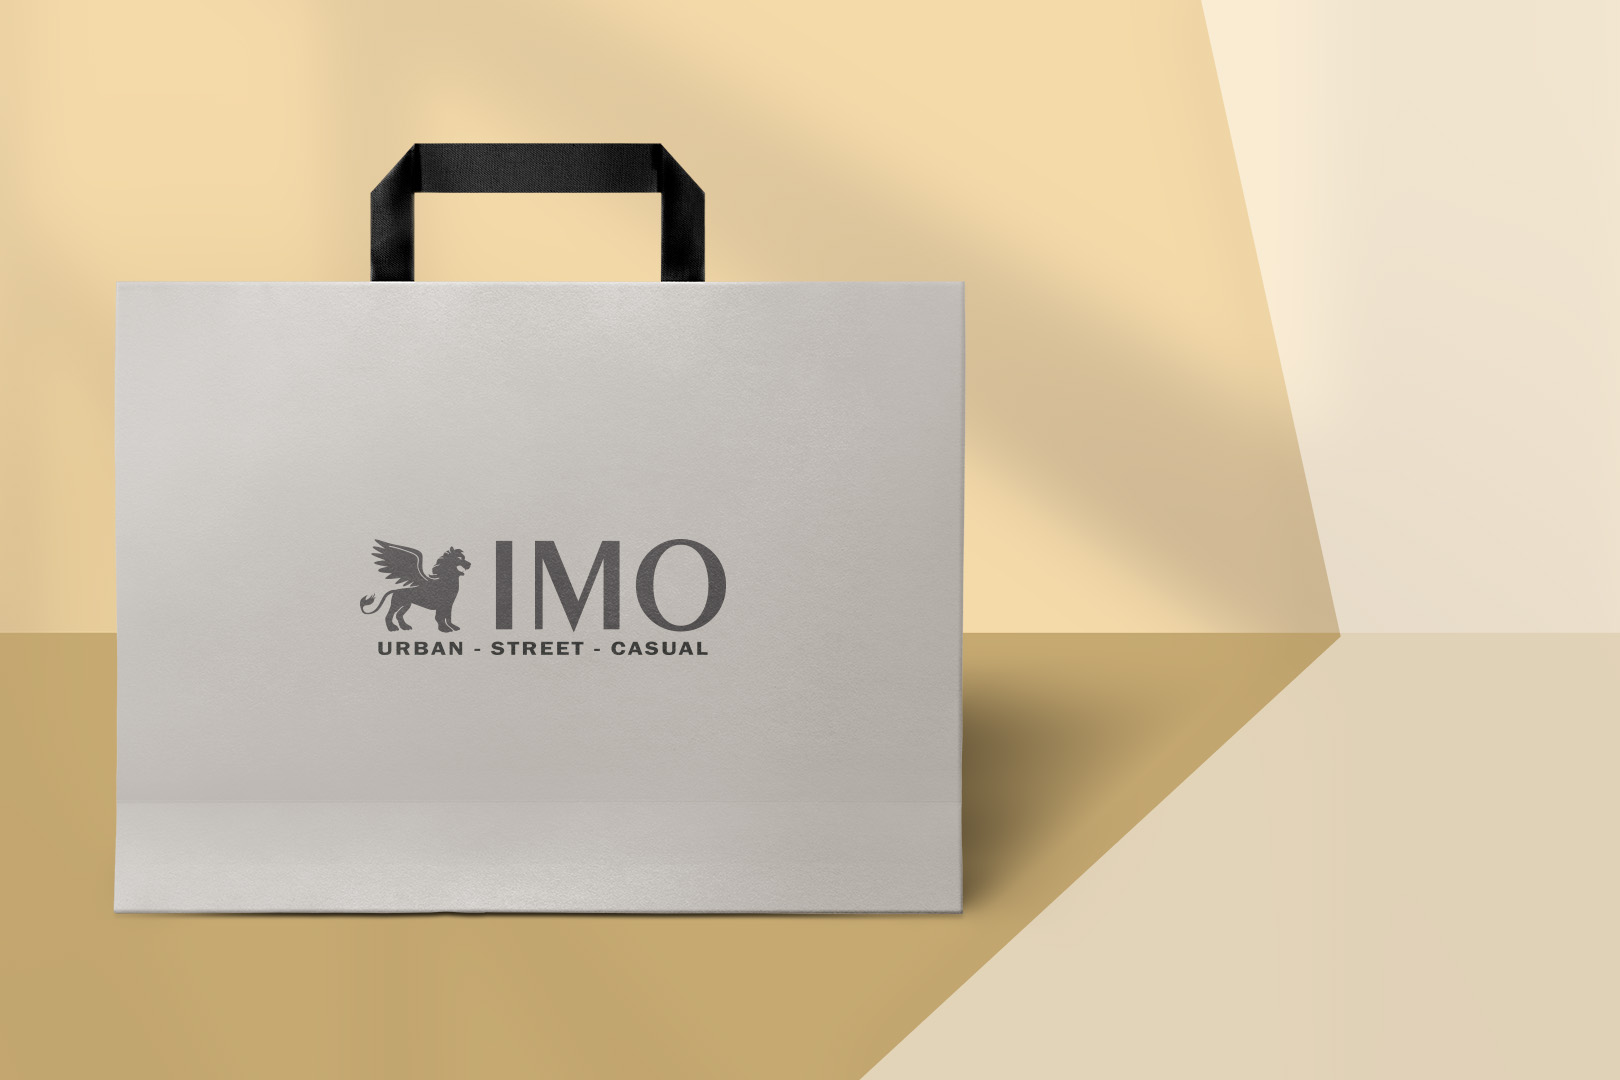 Stilvolle Papier-Tasche mit Ihrem einzigartigen Firmenlogo, entworfen für umweltbewusste Kunden, die Wert auf Nachhaltigkeit und ansprechendes Design legen.